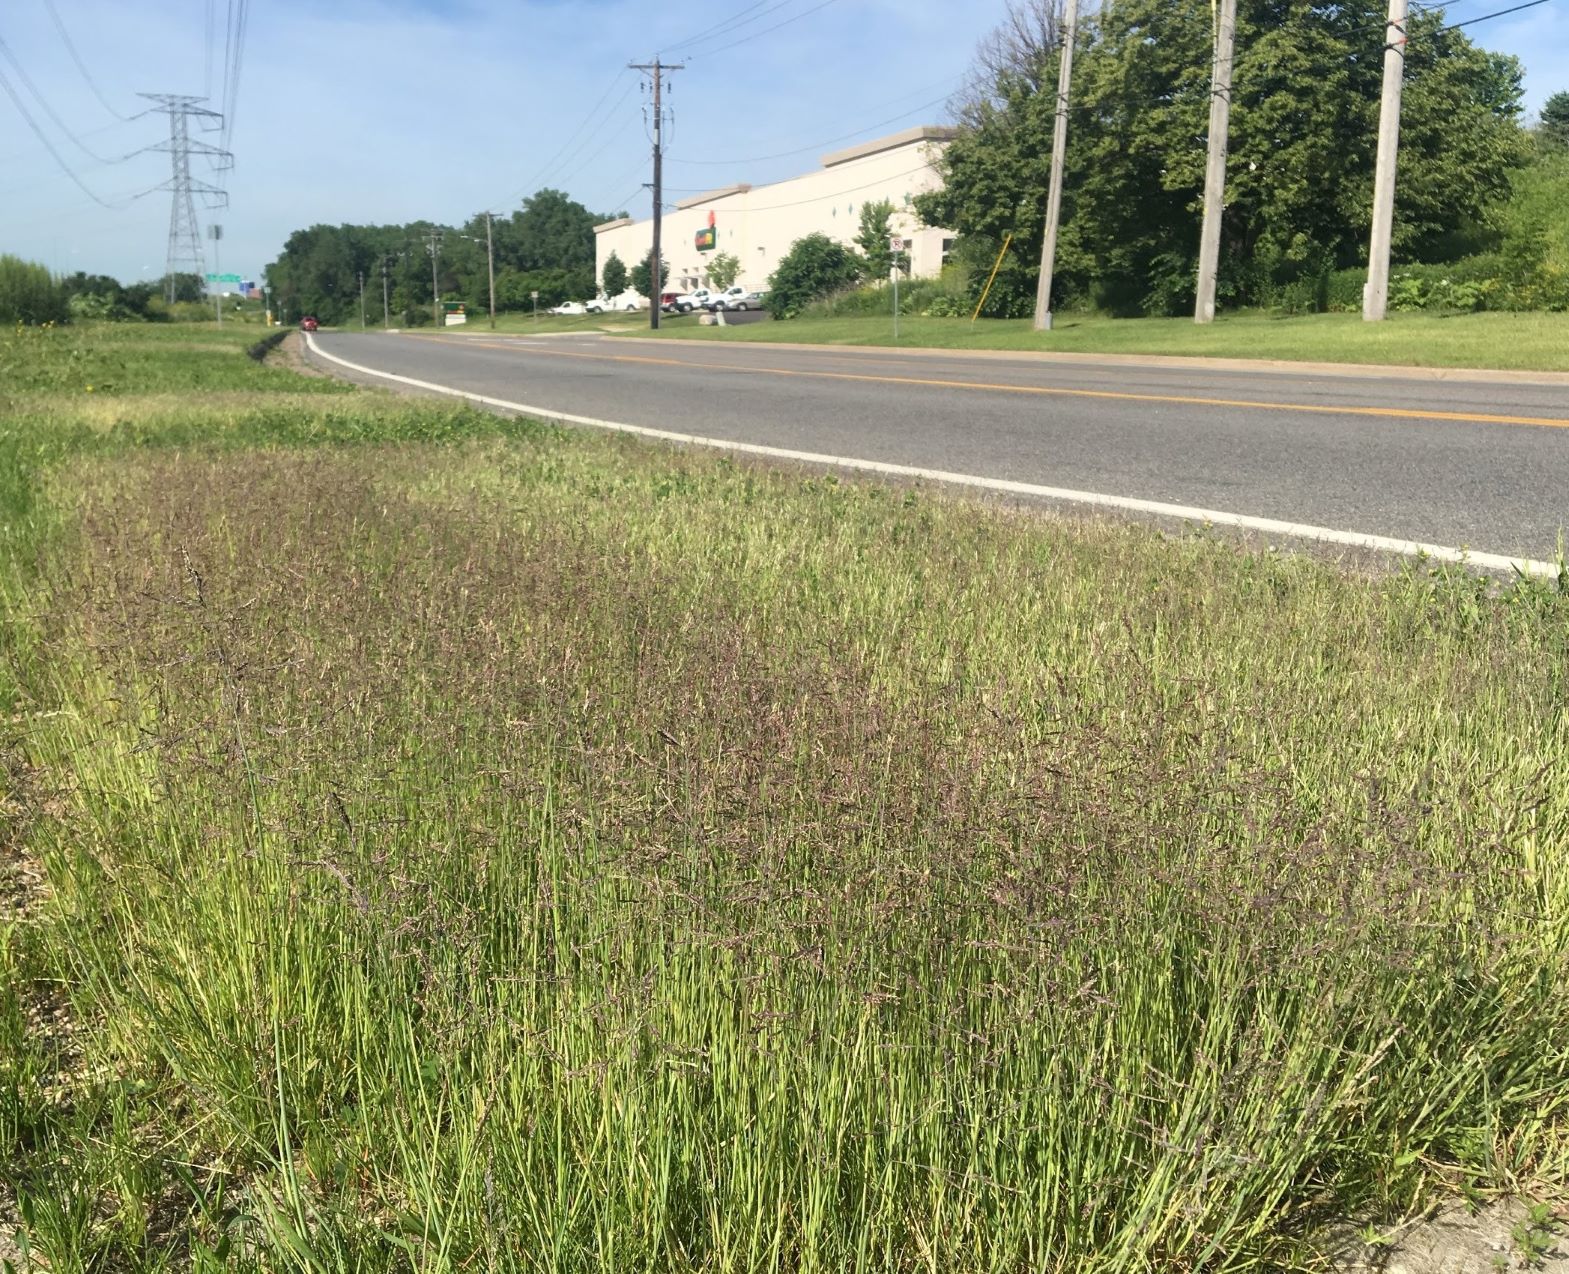 plot of alkaligrass along roadside